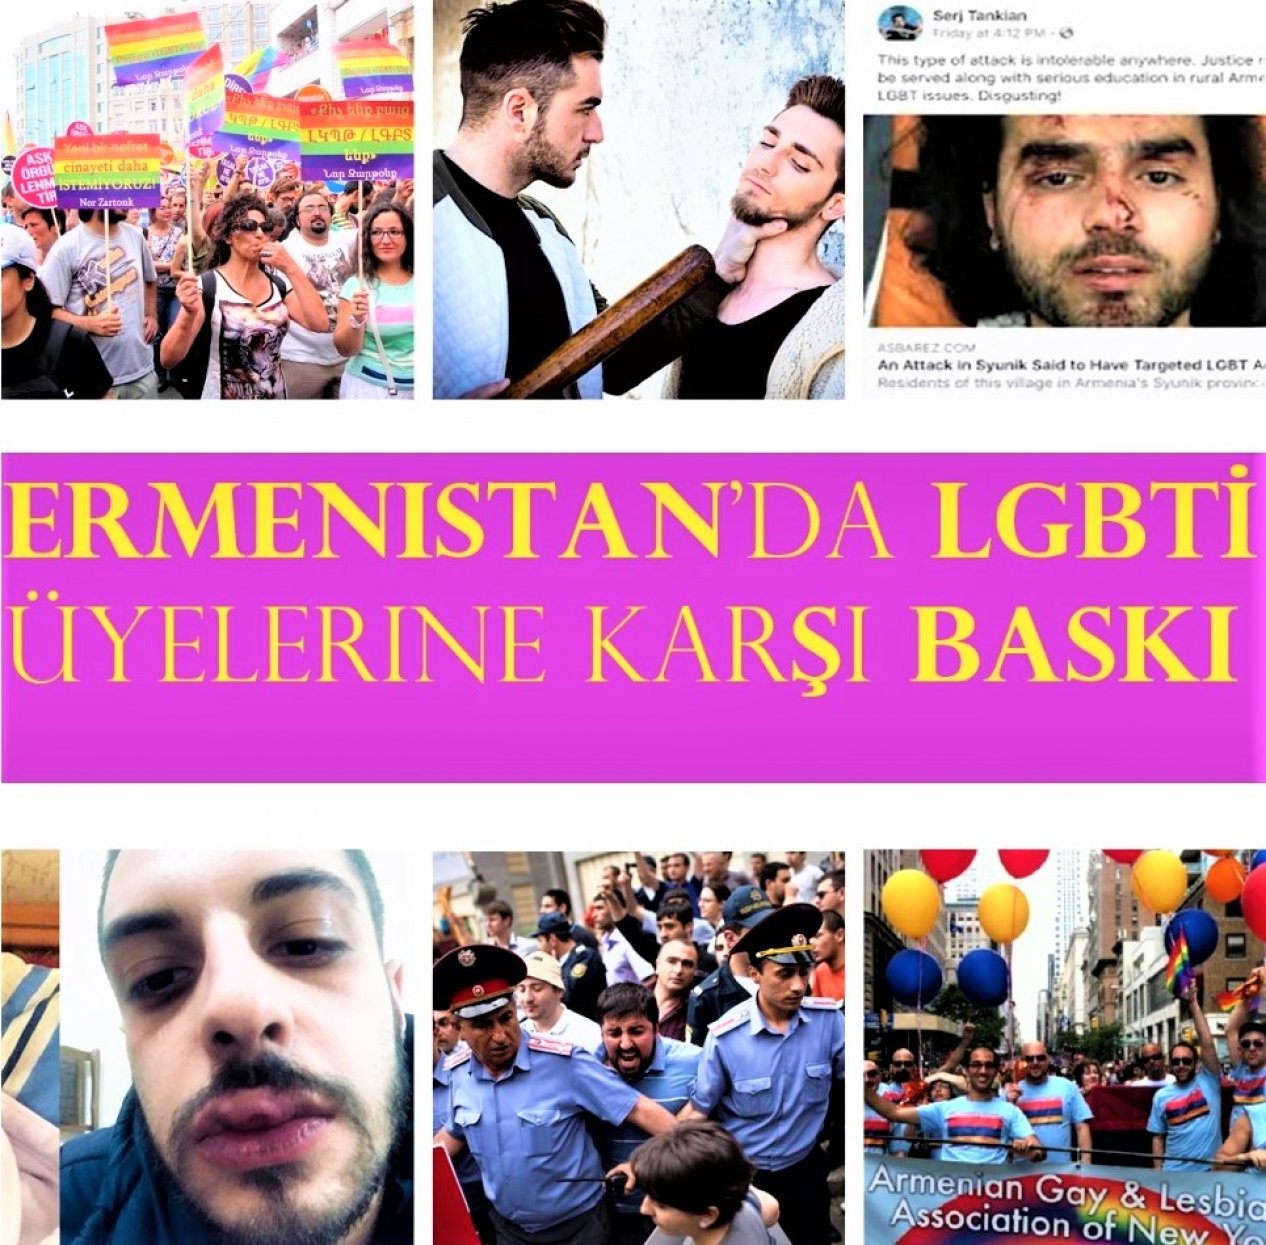 İki gencin intiharının ardından ortaya çıkan Ermenistan’da LGBTİ üyelerine karşı baskının gerçek olup olmadığını araştırdık